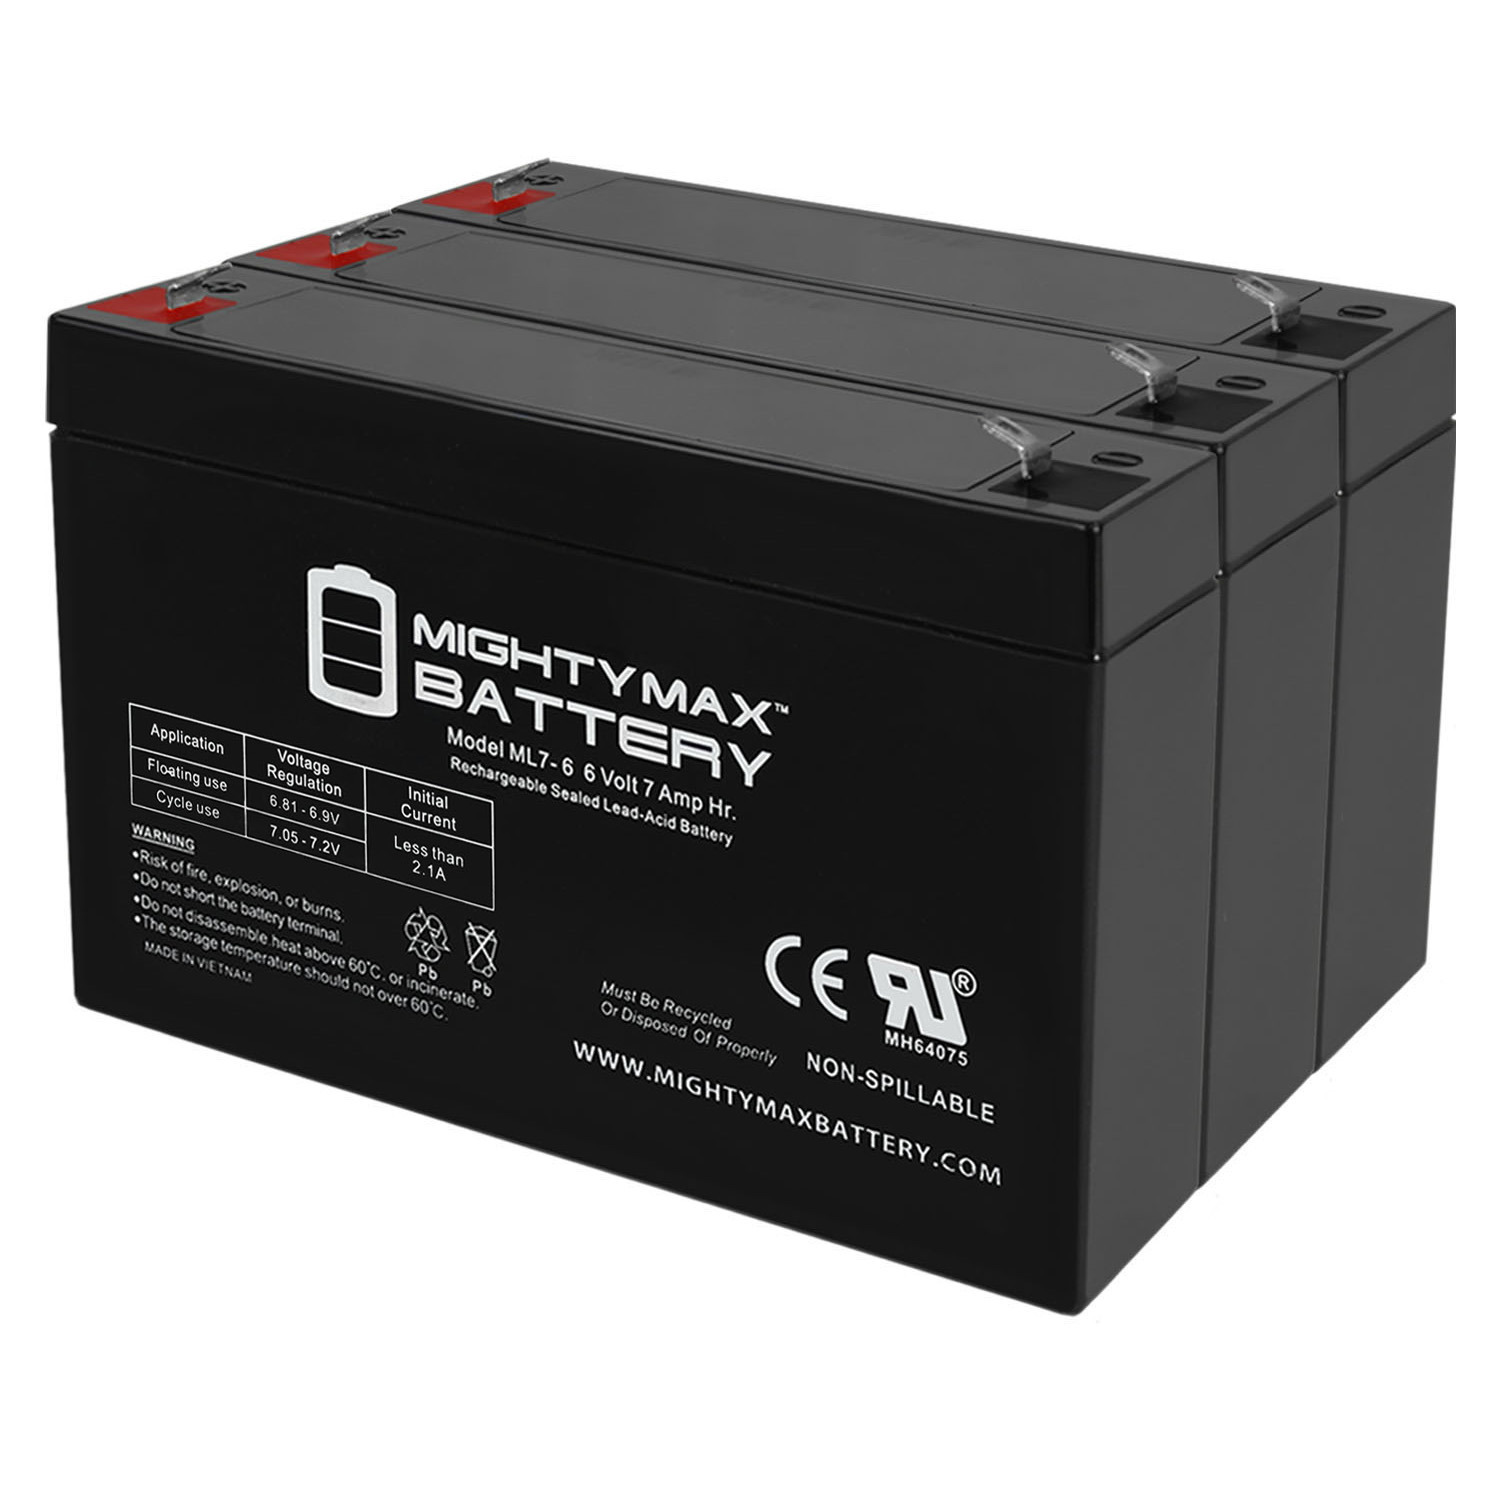 6V 7Ah SLA Replacement Battery for Sure-Lites 12V1504 - 3 Pack